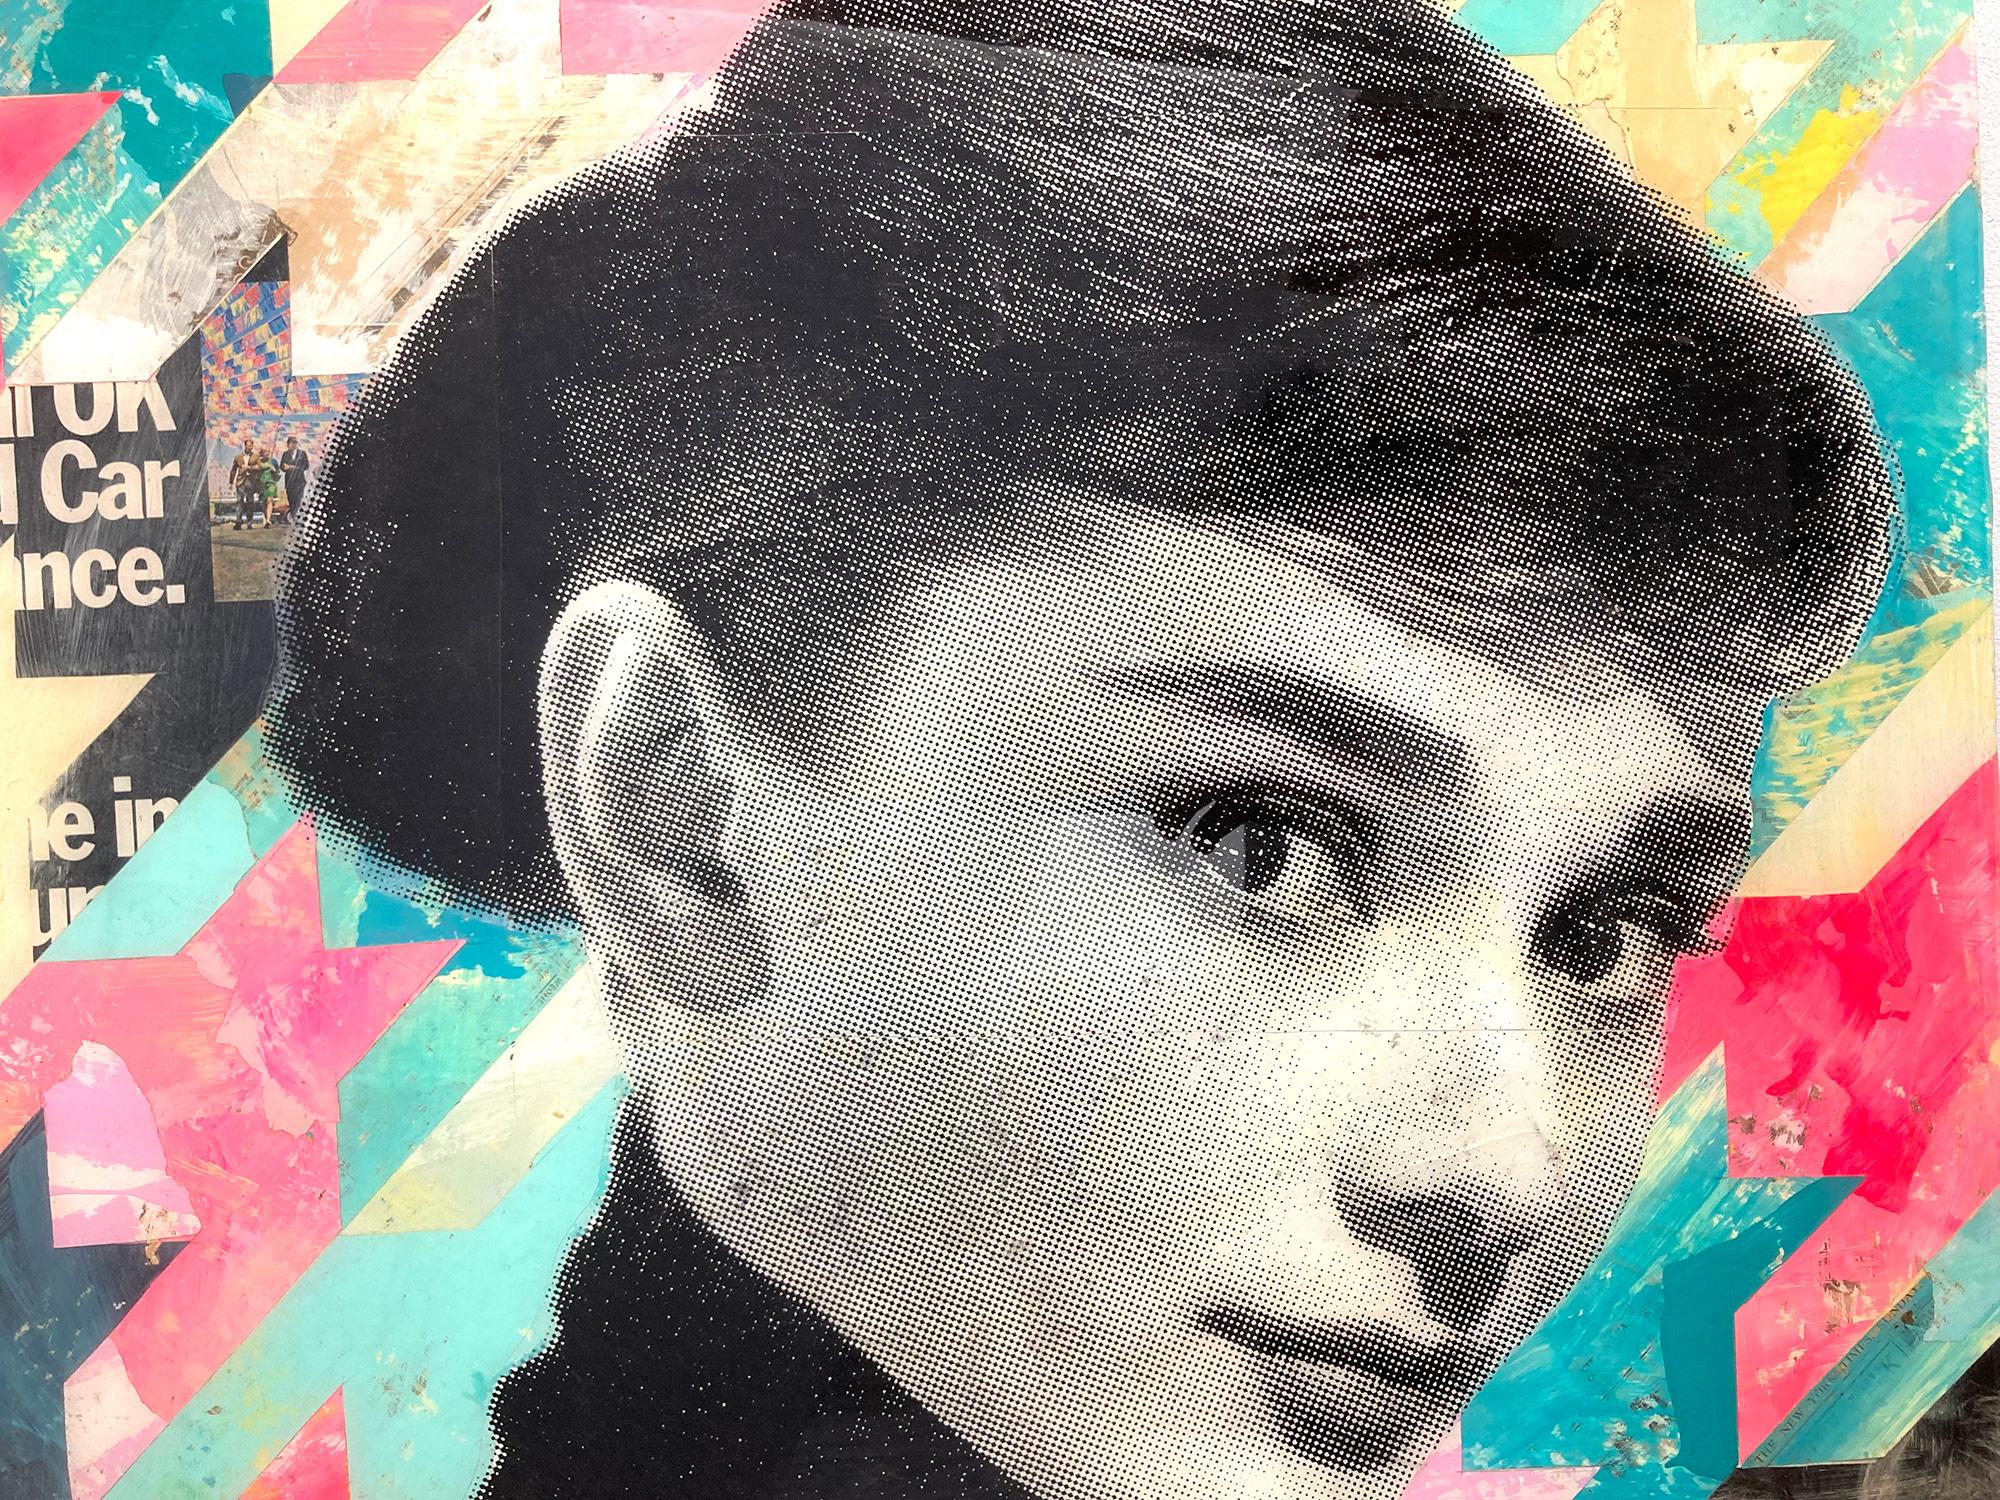 Cette pièce représente la célèbre actrice et mannequin britannique Audrey Hepburn. Célébrant les icônes de l'âge d'or avec des couleurs expressives et audacieuses en capturant ces moments de l'histoire, ses peintures servent de véhicules pour faire